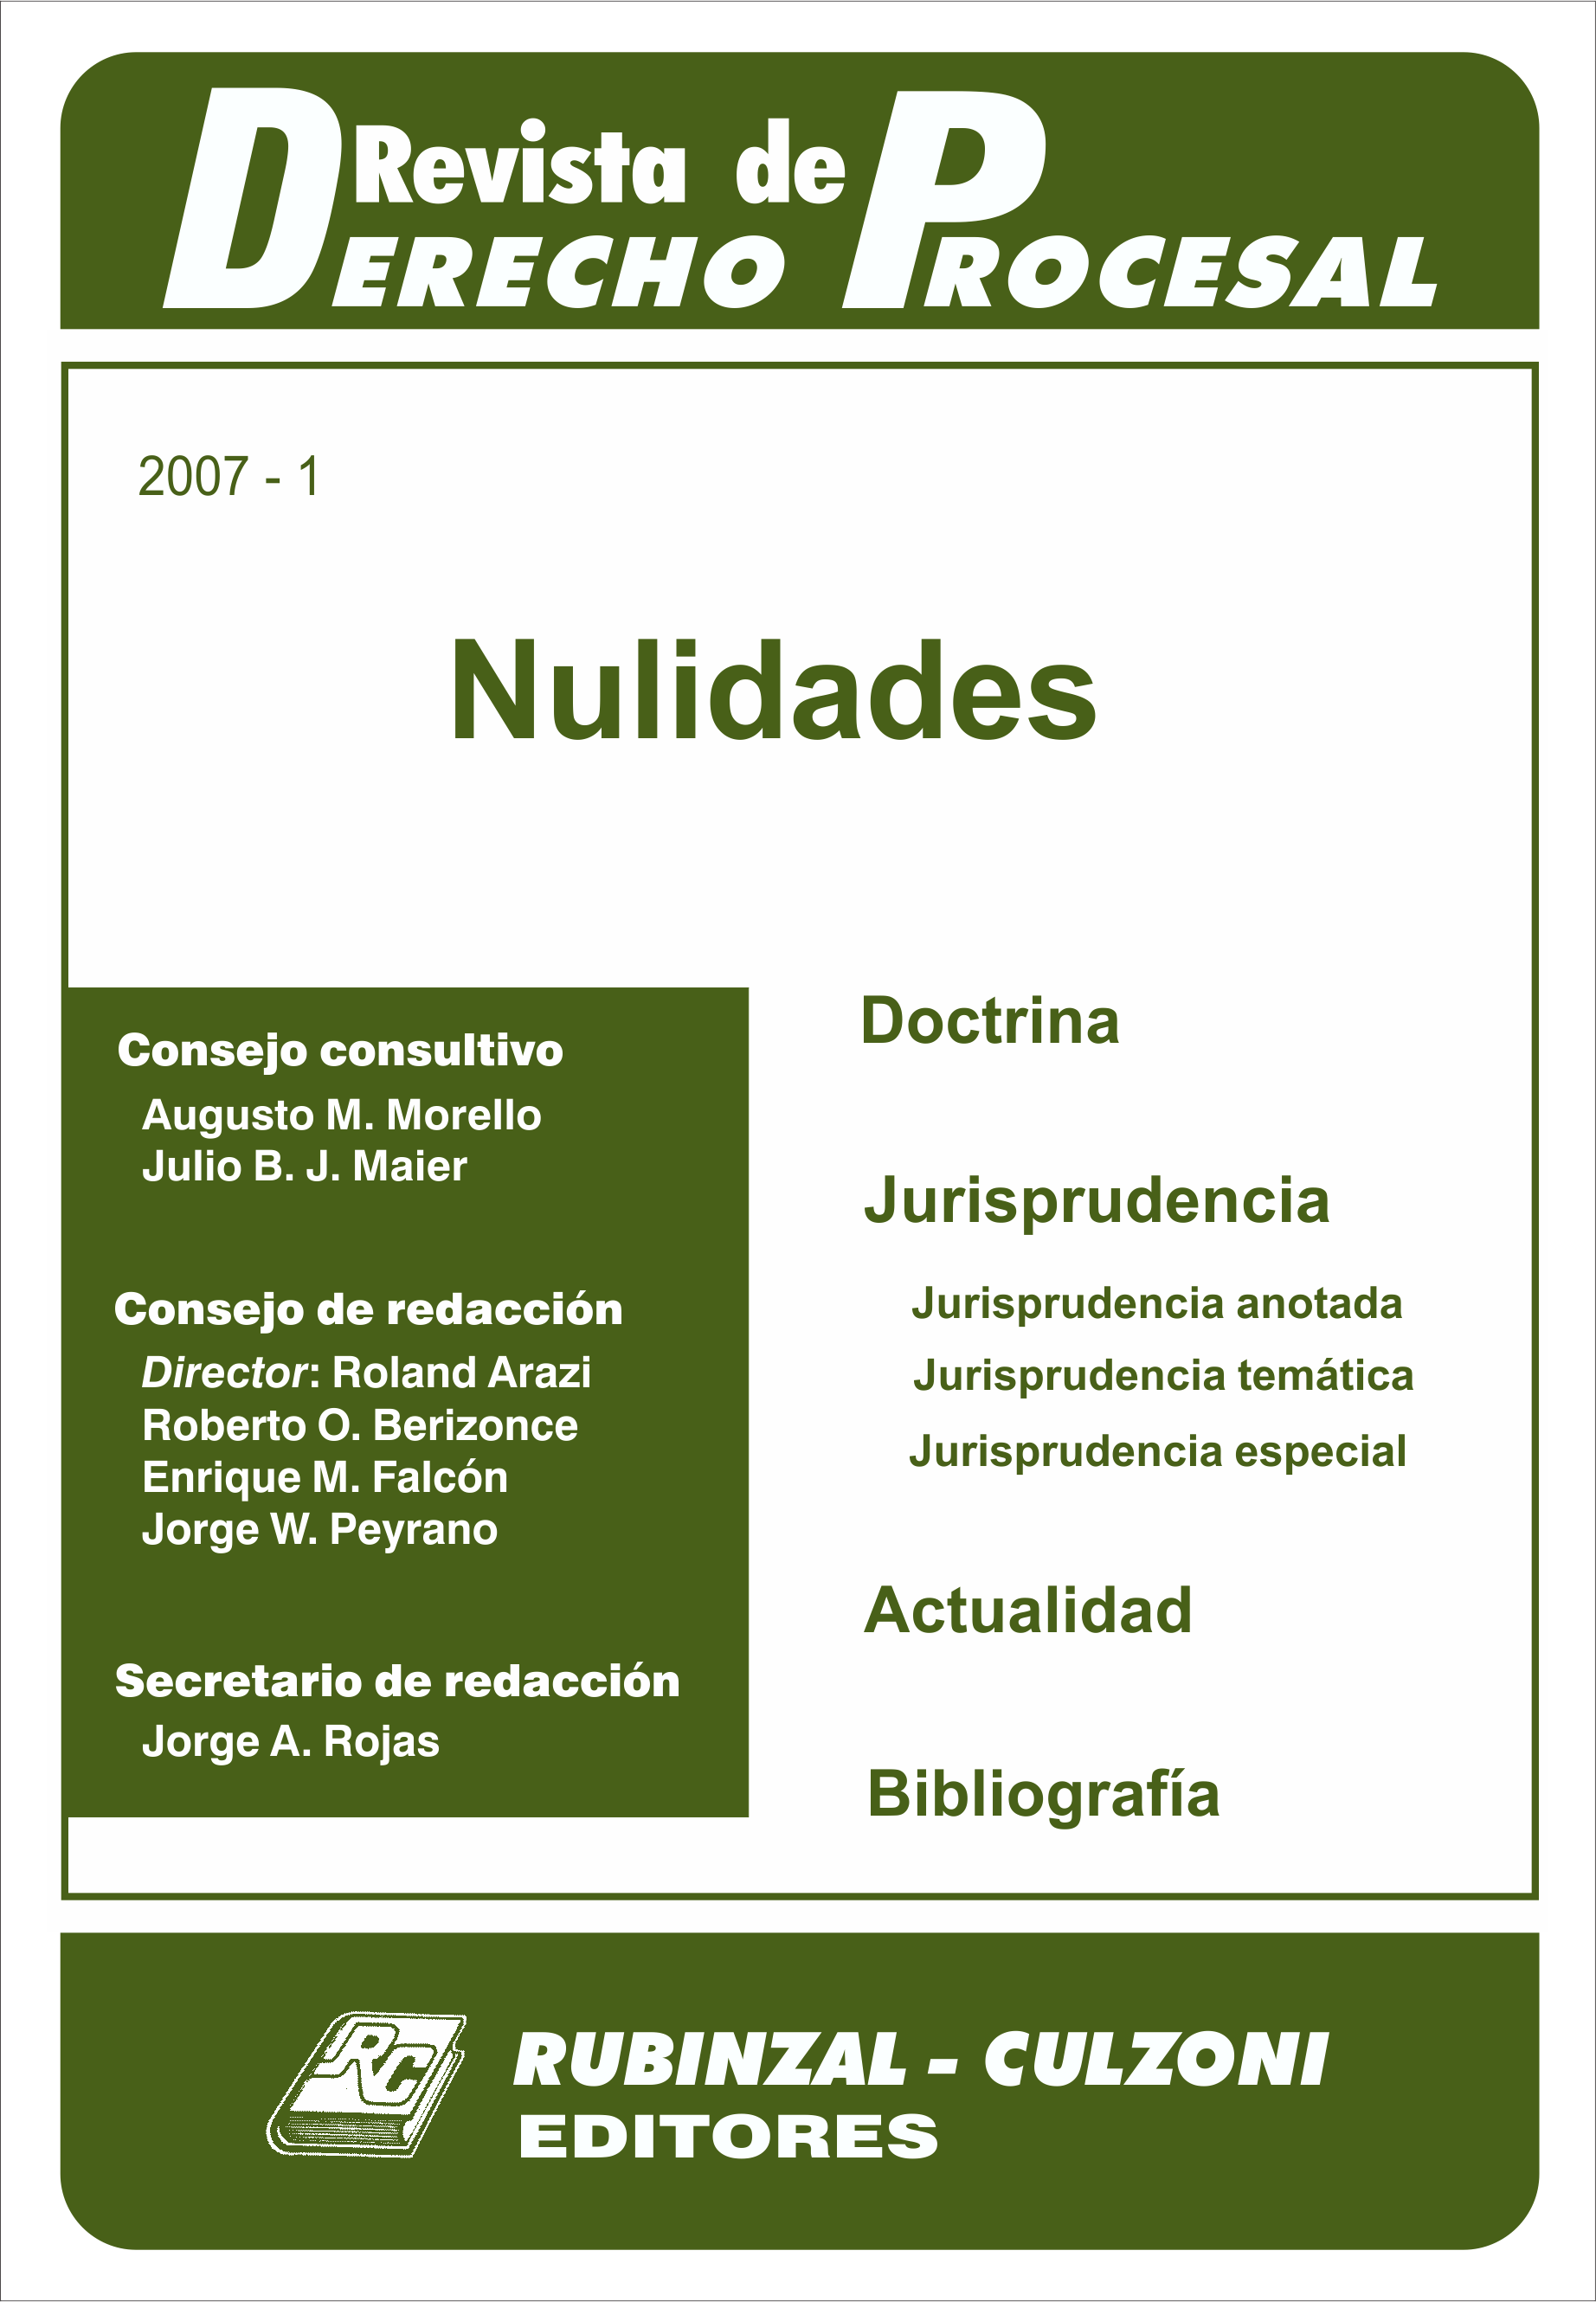 Revista de Derecho Procesal - Nulidades.